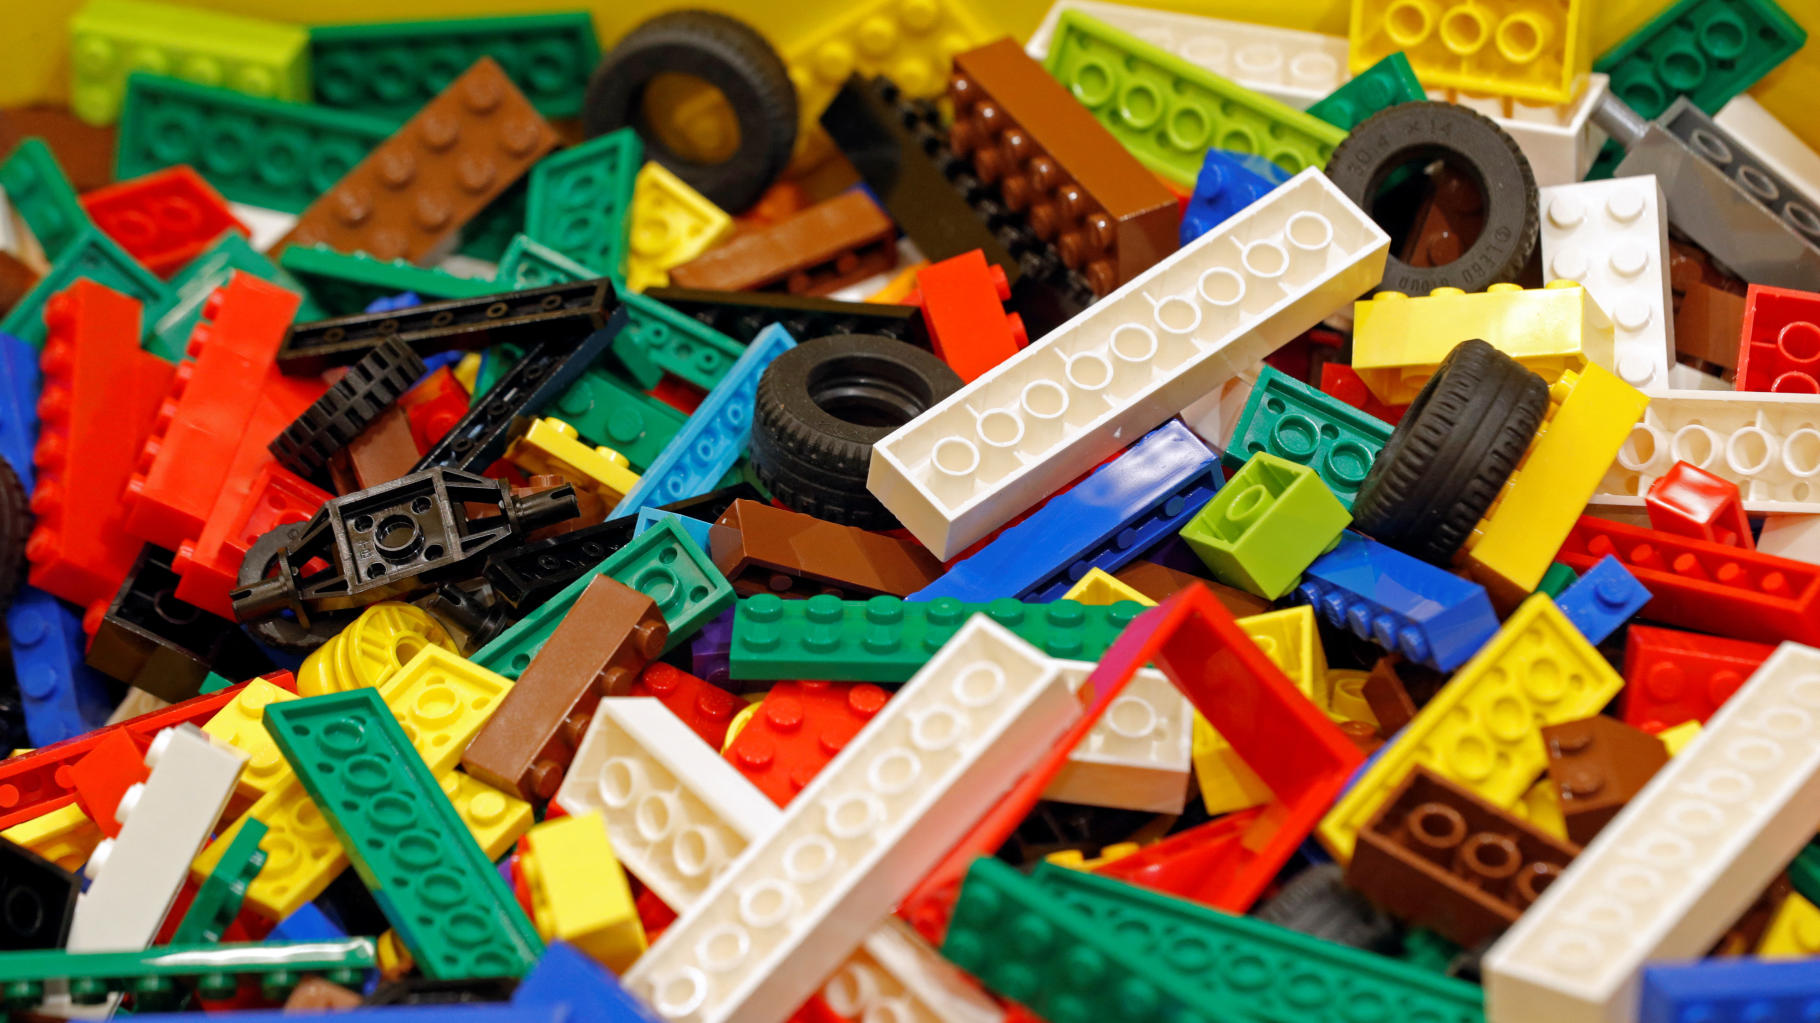 Lego abandonne son projet de briques écolos pour des raisons... d’écologie